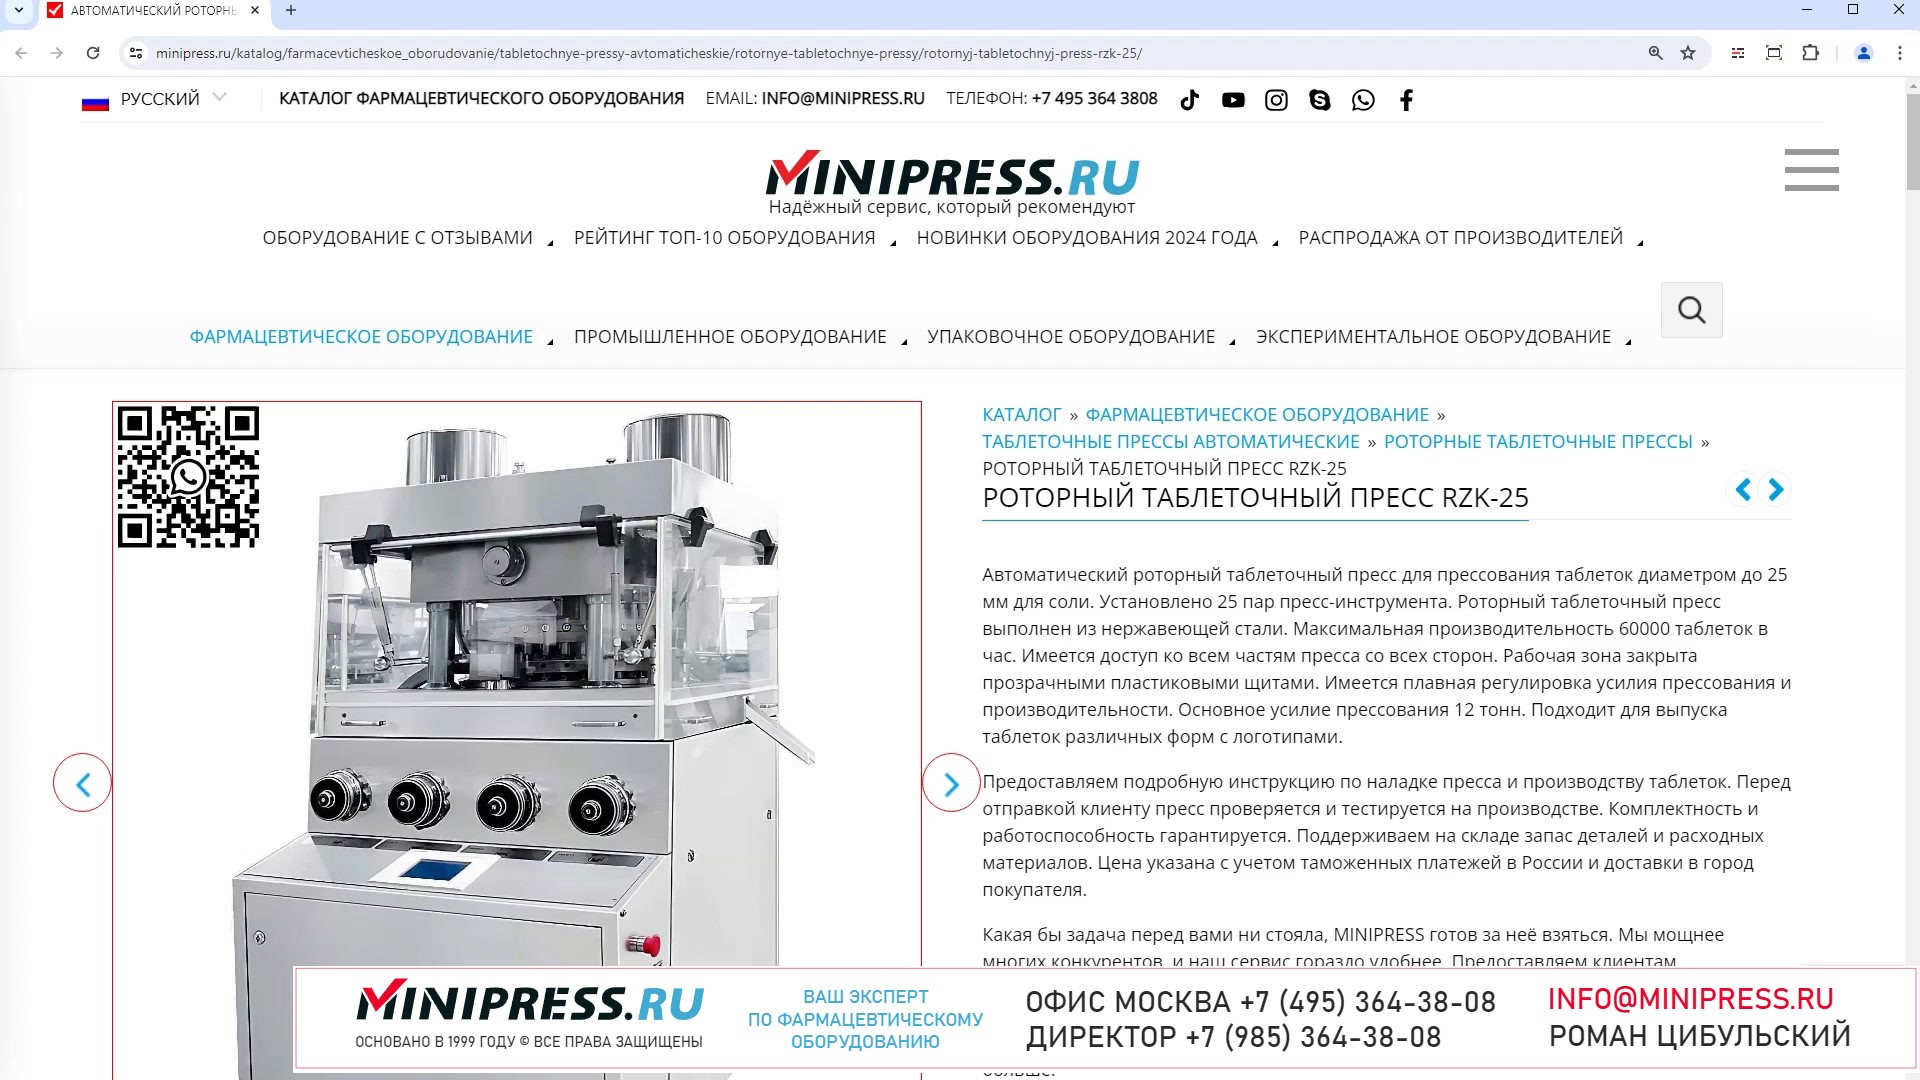 Minipress.ru Роторный таблеточный пресс RZK-25